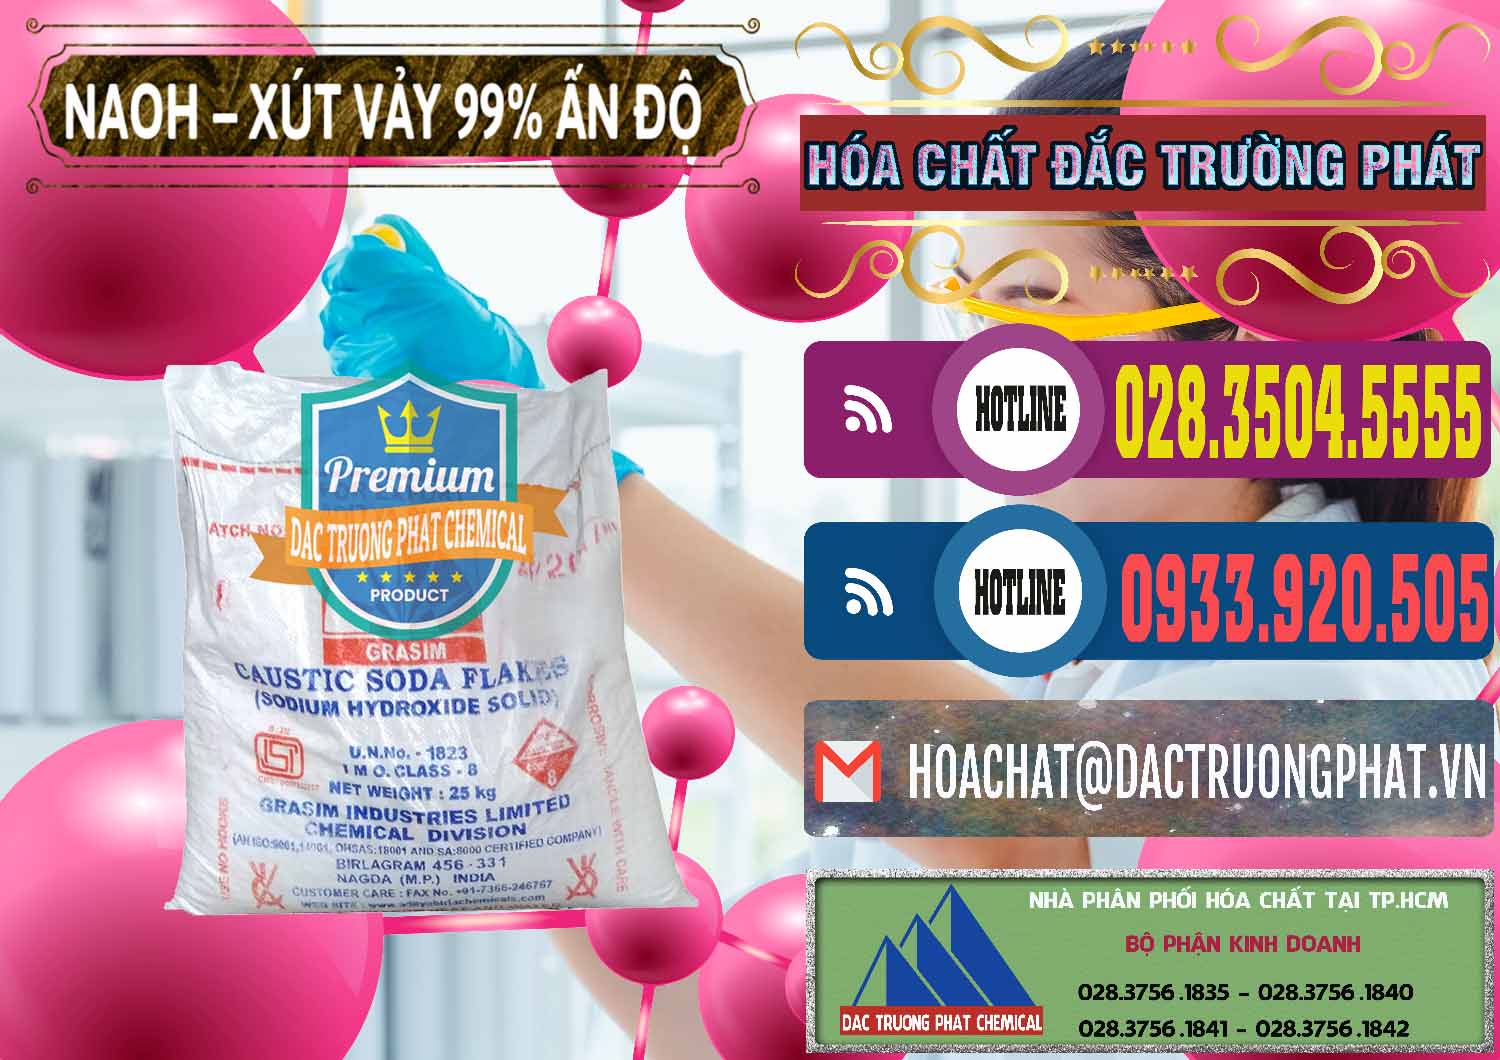 Cty phân phối & bán Xút Vảy - NaOH Vảy 99% Aditya Birla Grasim Ấn Độ India - 0171 - Đơn vị chuyên bán _ phân phối hóa chất tại TP.HCM - muabanhoachat.com.vn